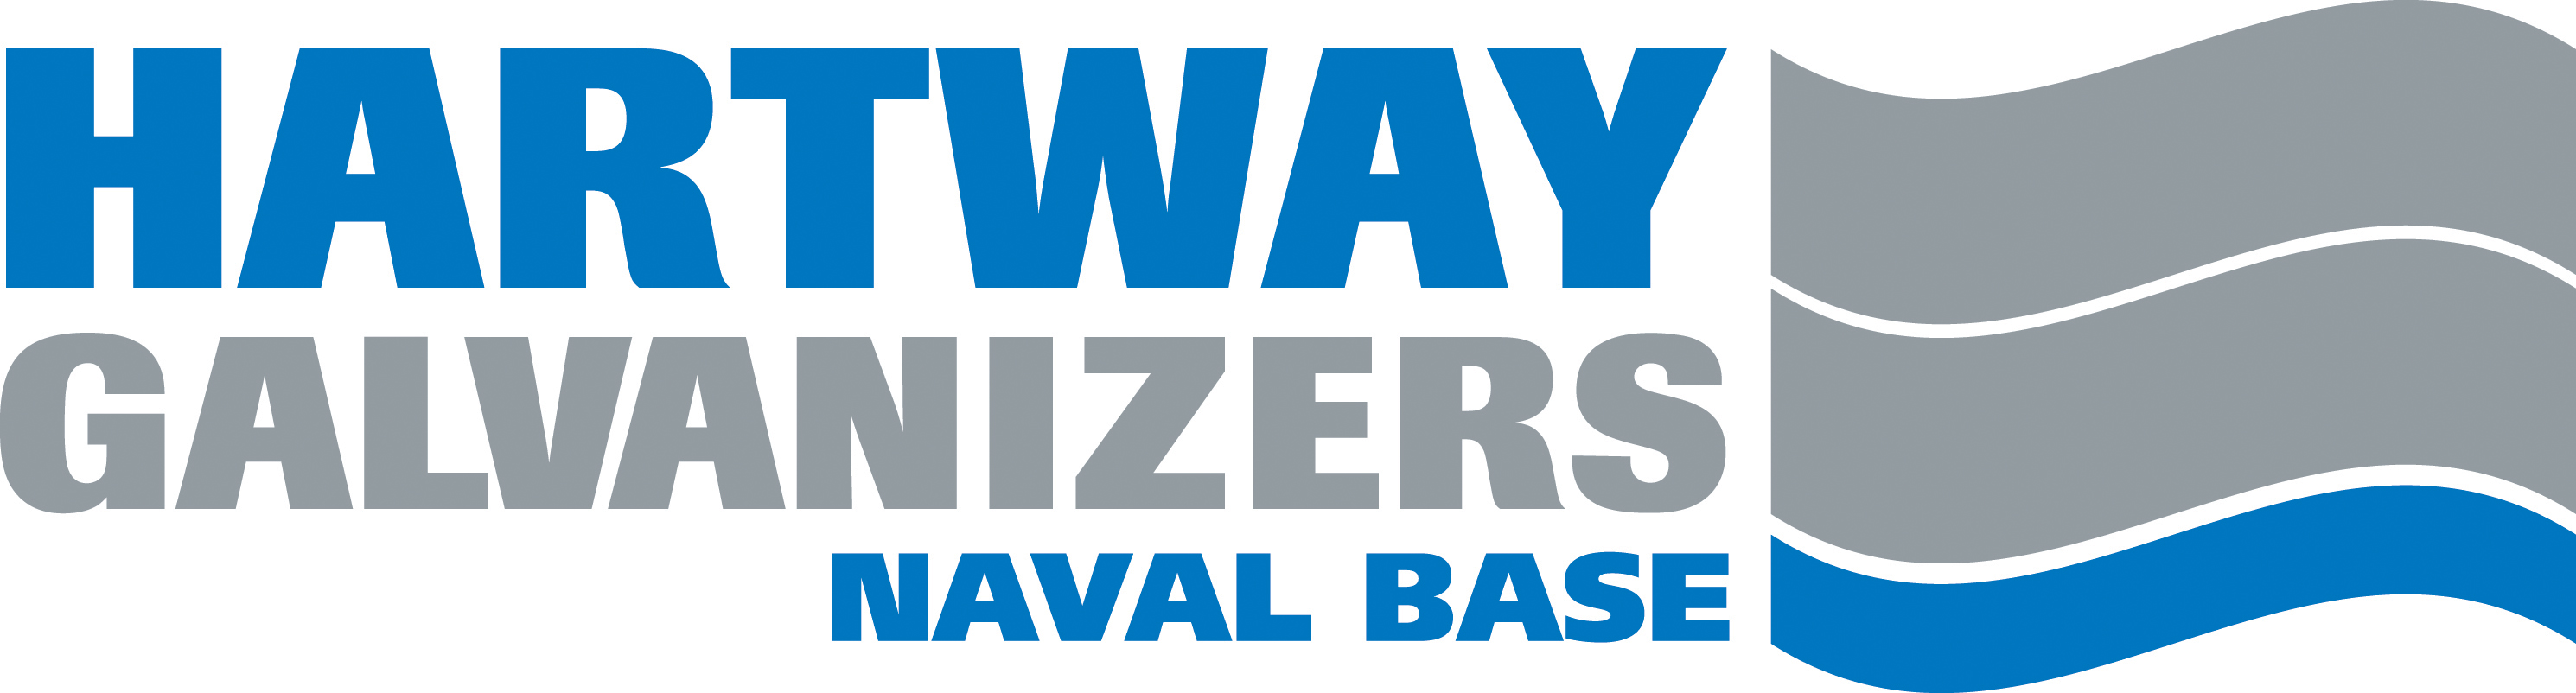 Hartway Galvanizers